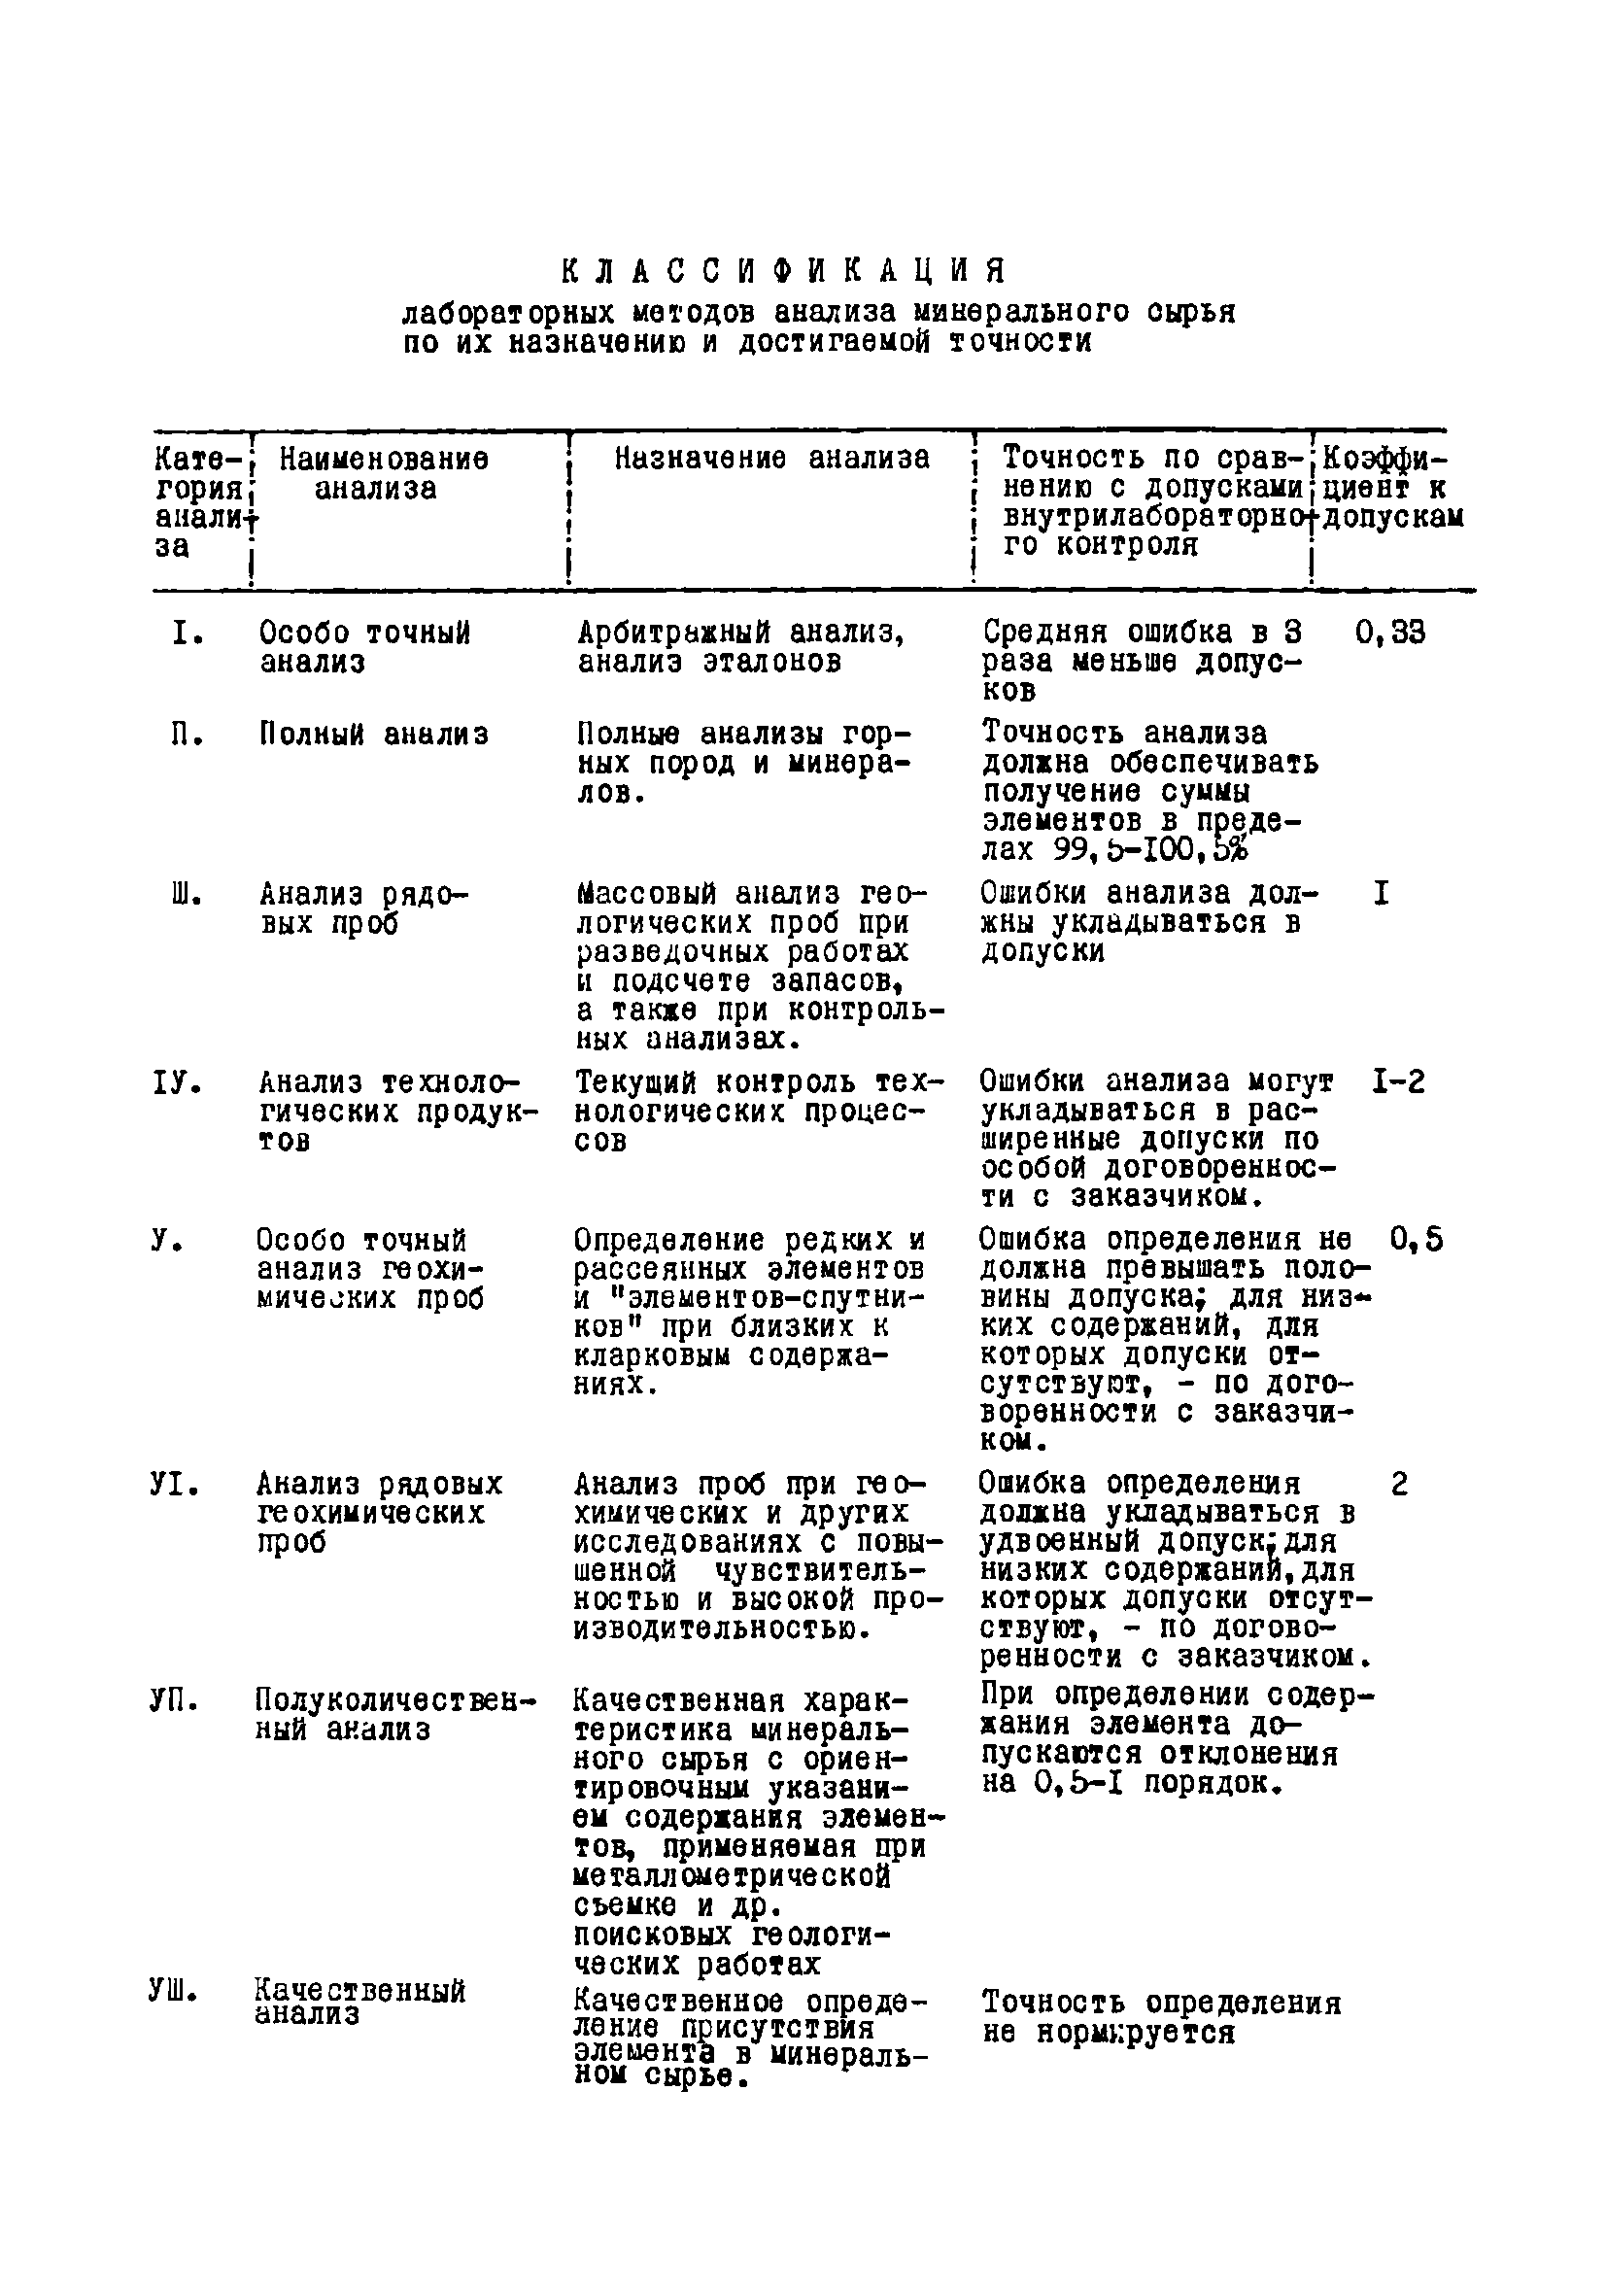 Инструкция НСАМ 83-С